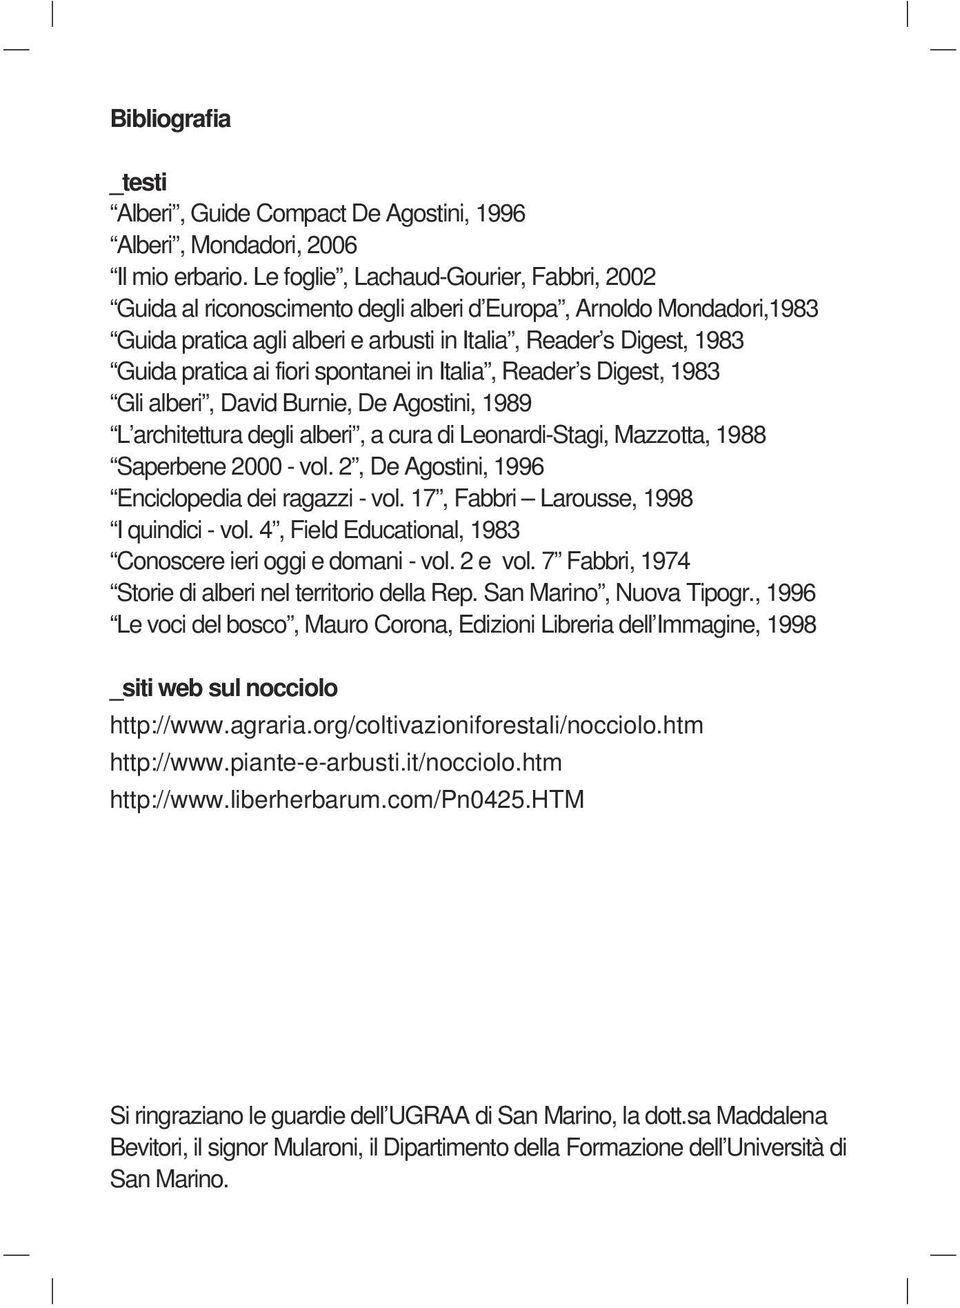 fiori spontanei in Italia, Reader s Digest, 1983 Gli alberi, David Burnie, De Agostini, 1989 L architettura degli alberi, a cura di Leonardi-Stagi, Mazzotta, 1988 Saperbene 2000 - vol.